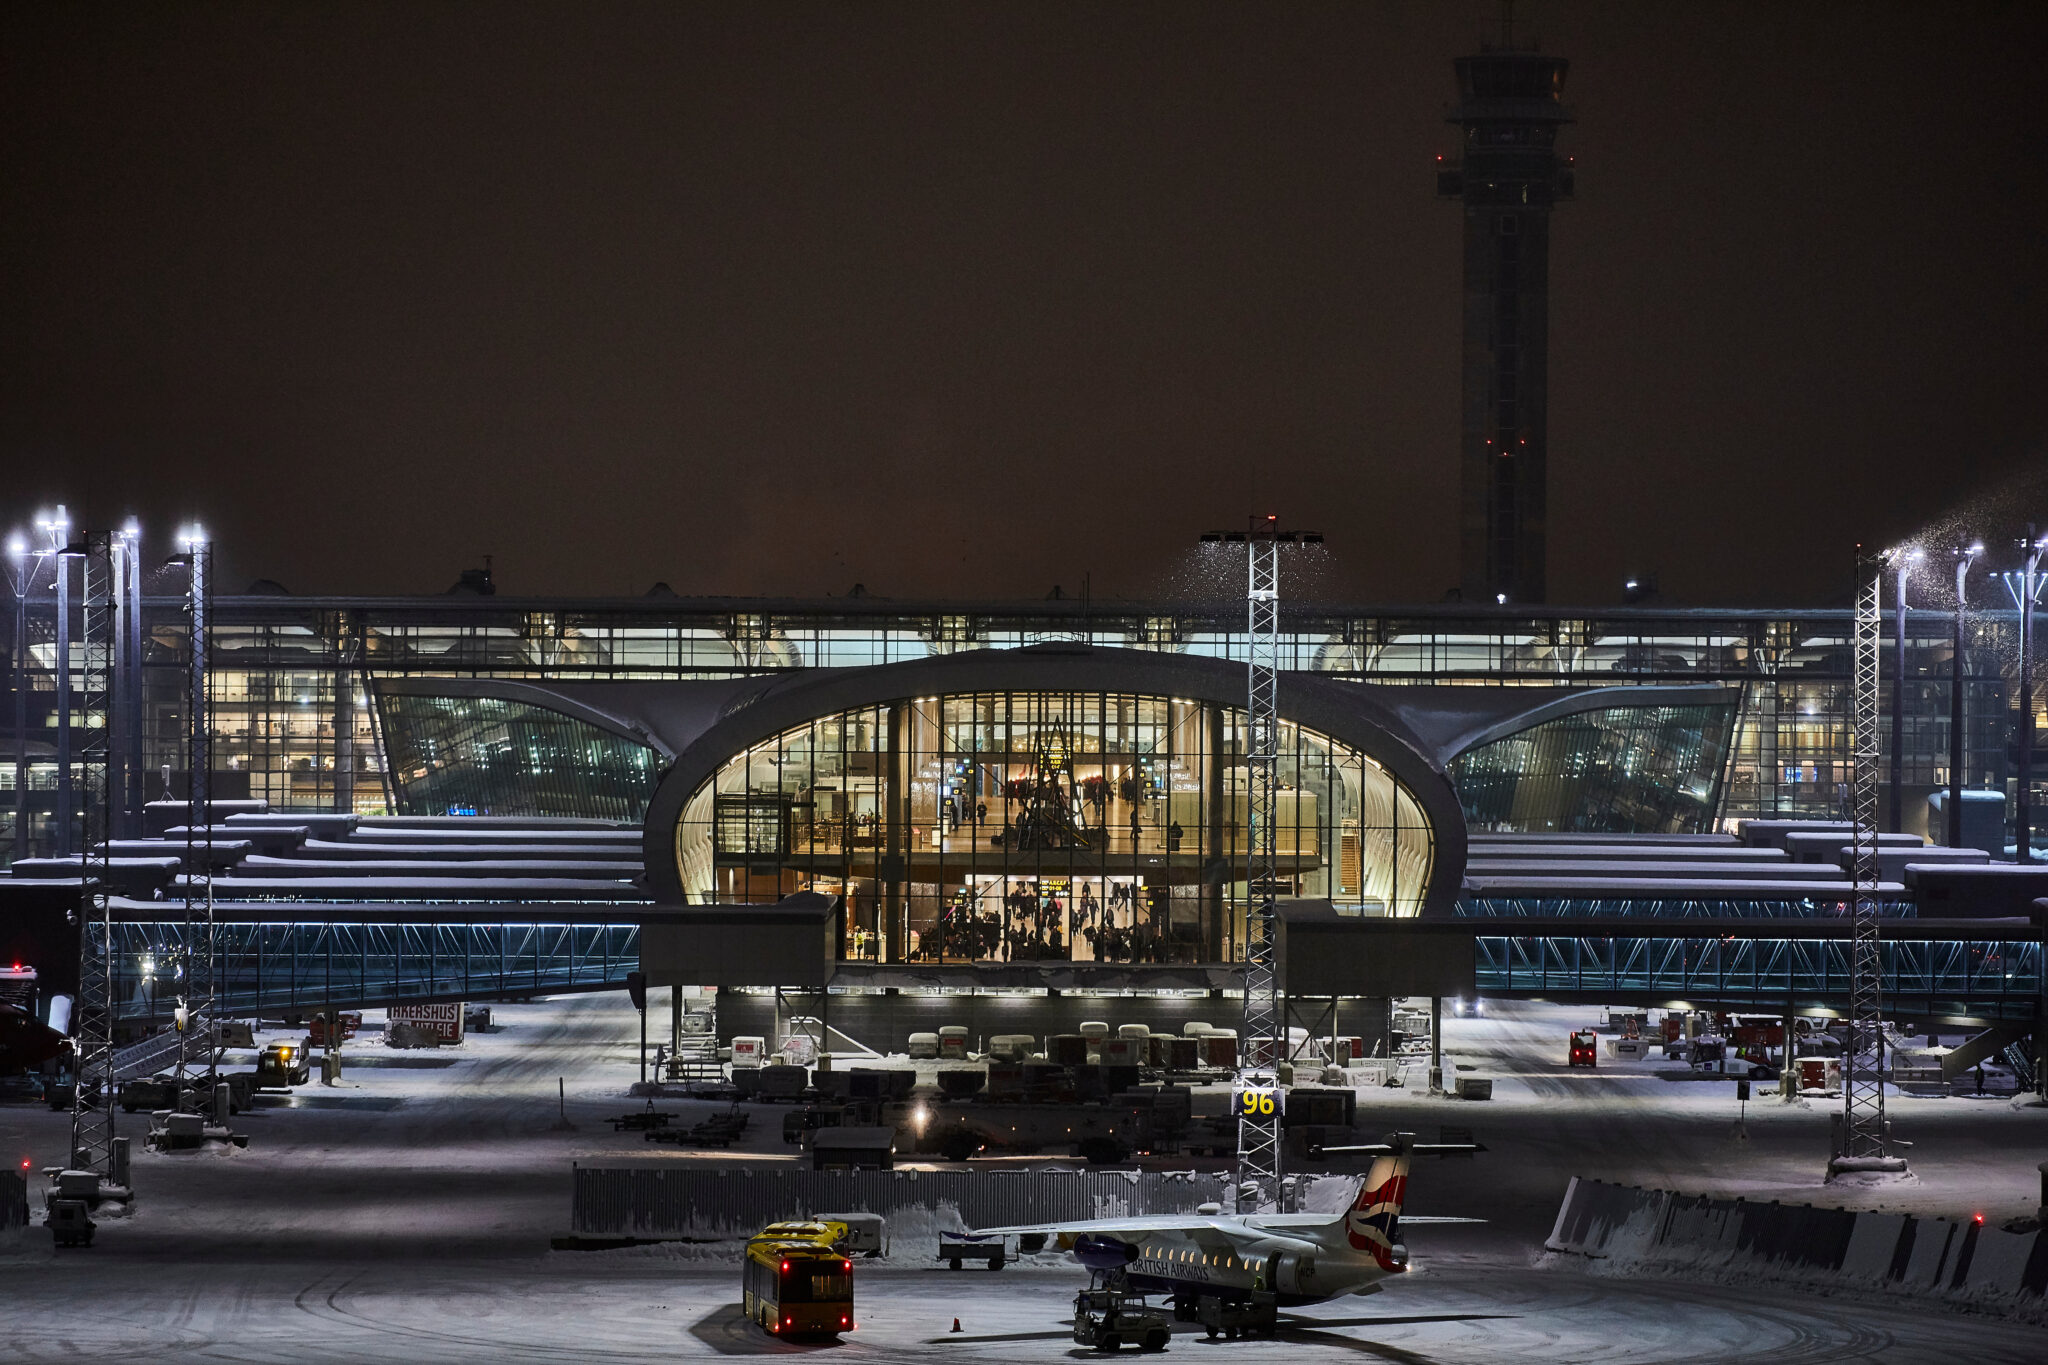 Oslo Airport at night. Photo: Avinor